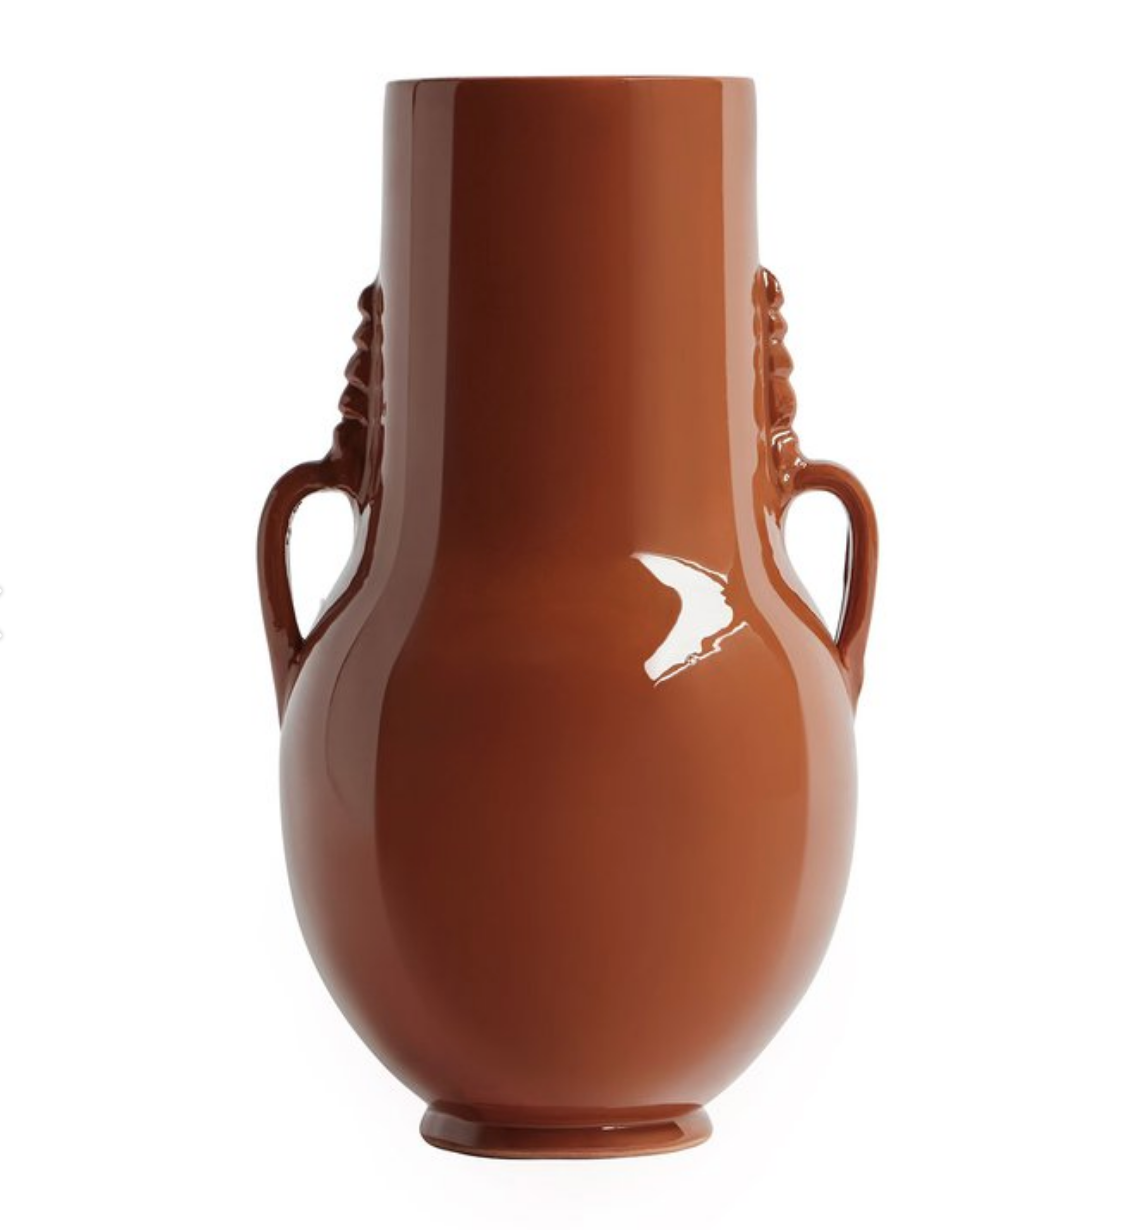 Moroccan vase